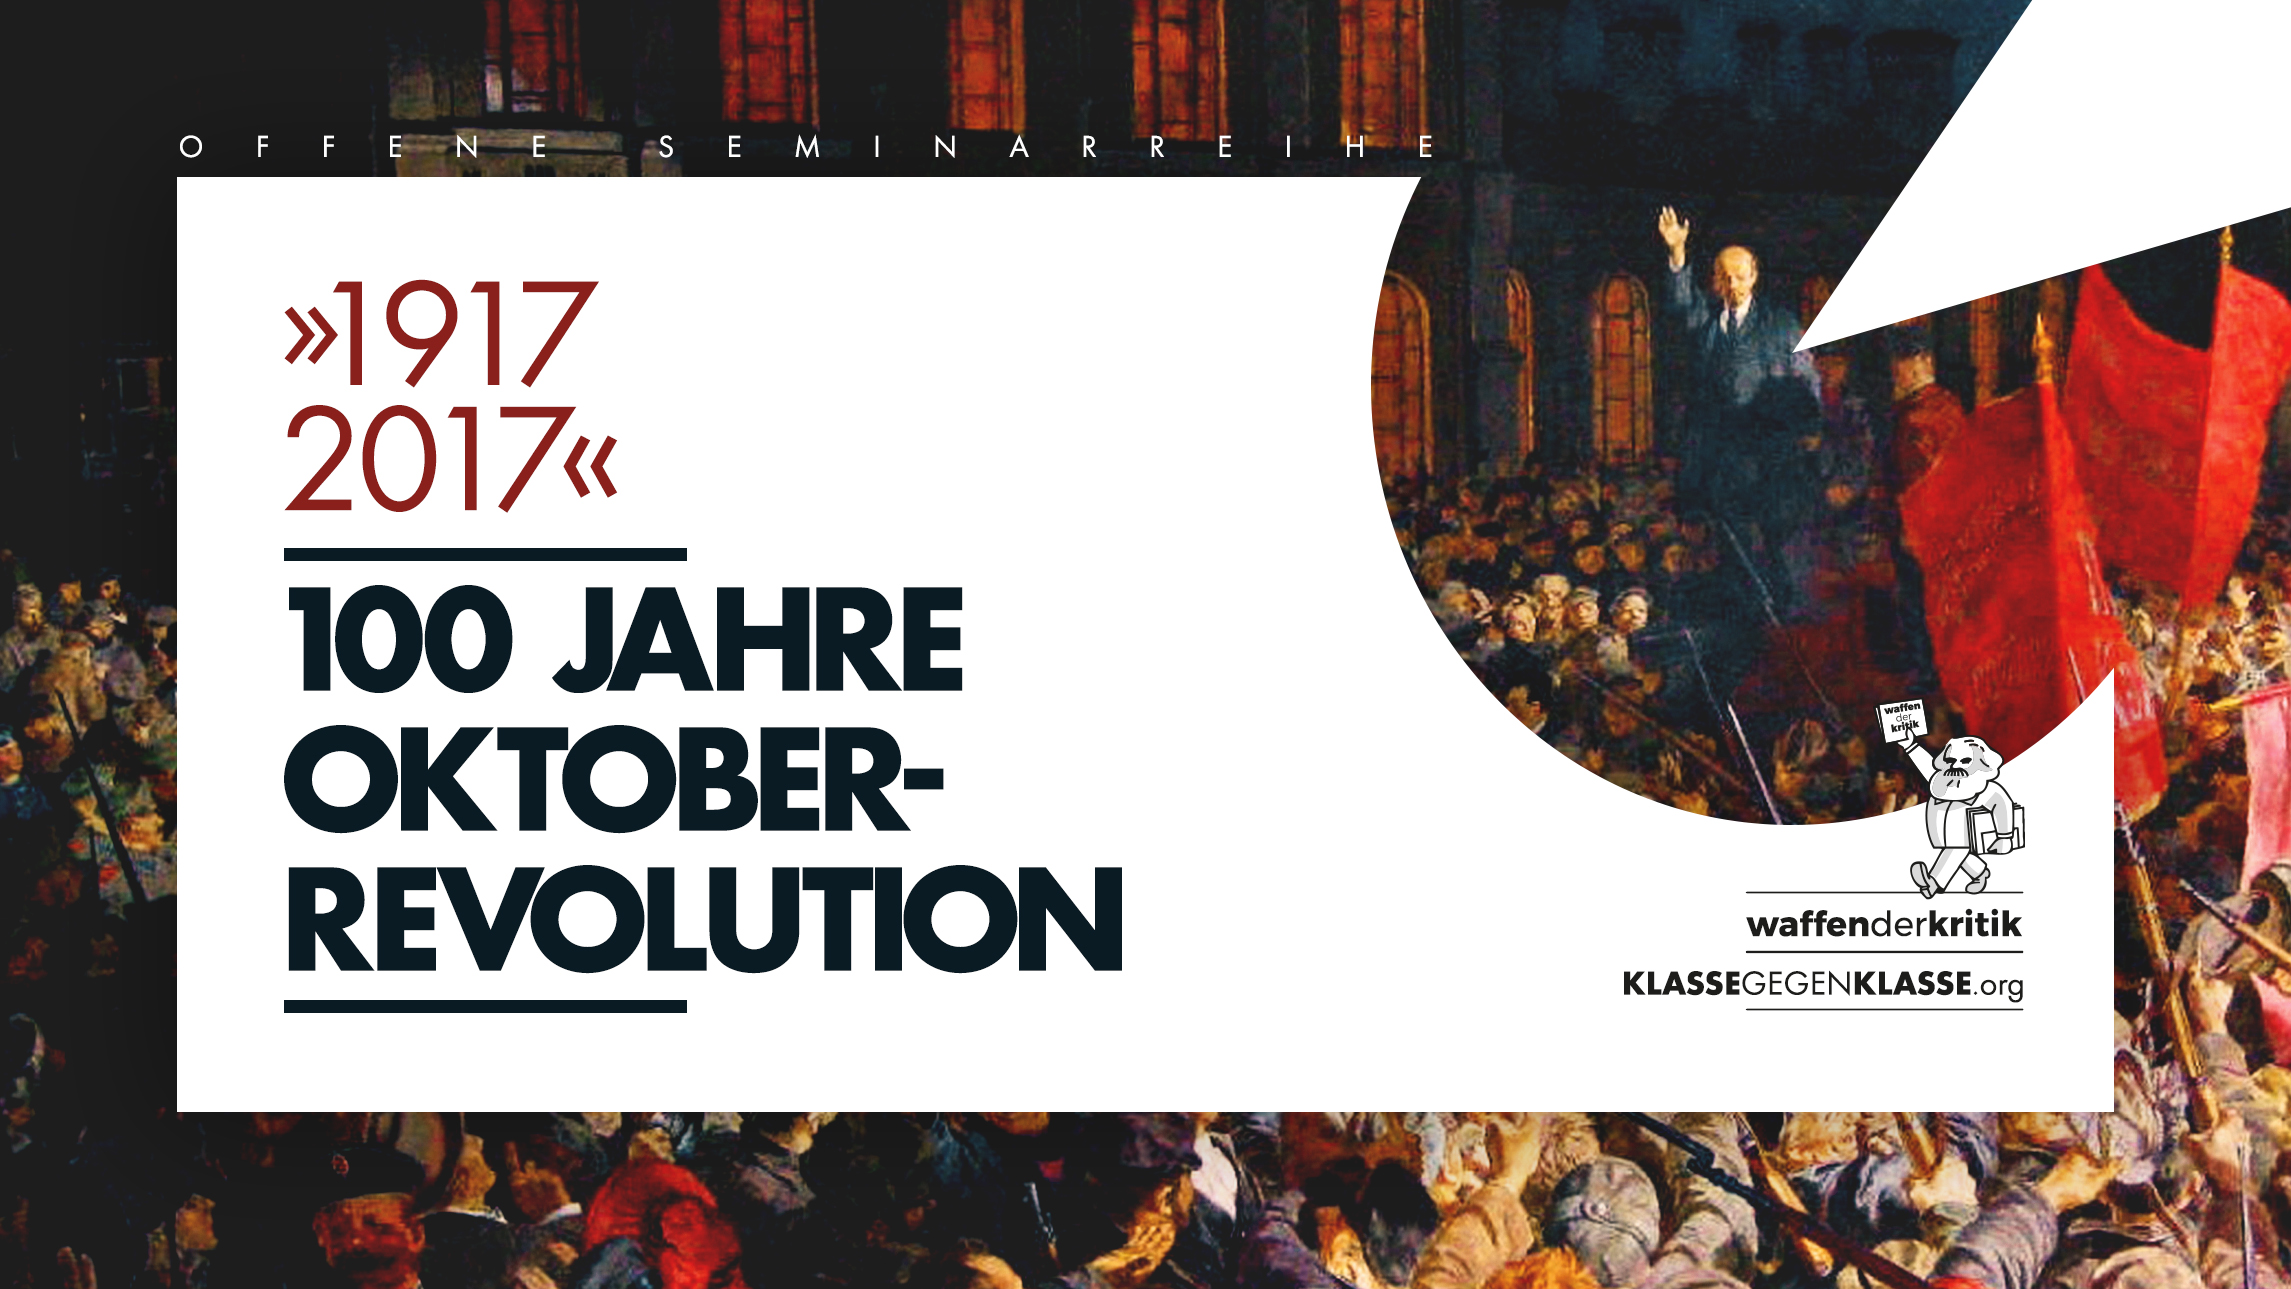 1917 – 2017: 100 Jahre Oktoberrevolution. Offene Seminarreihe.